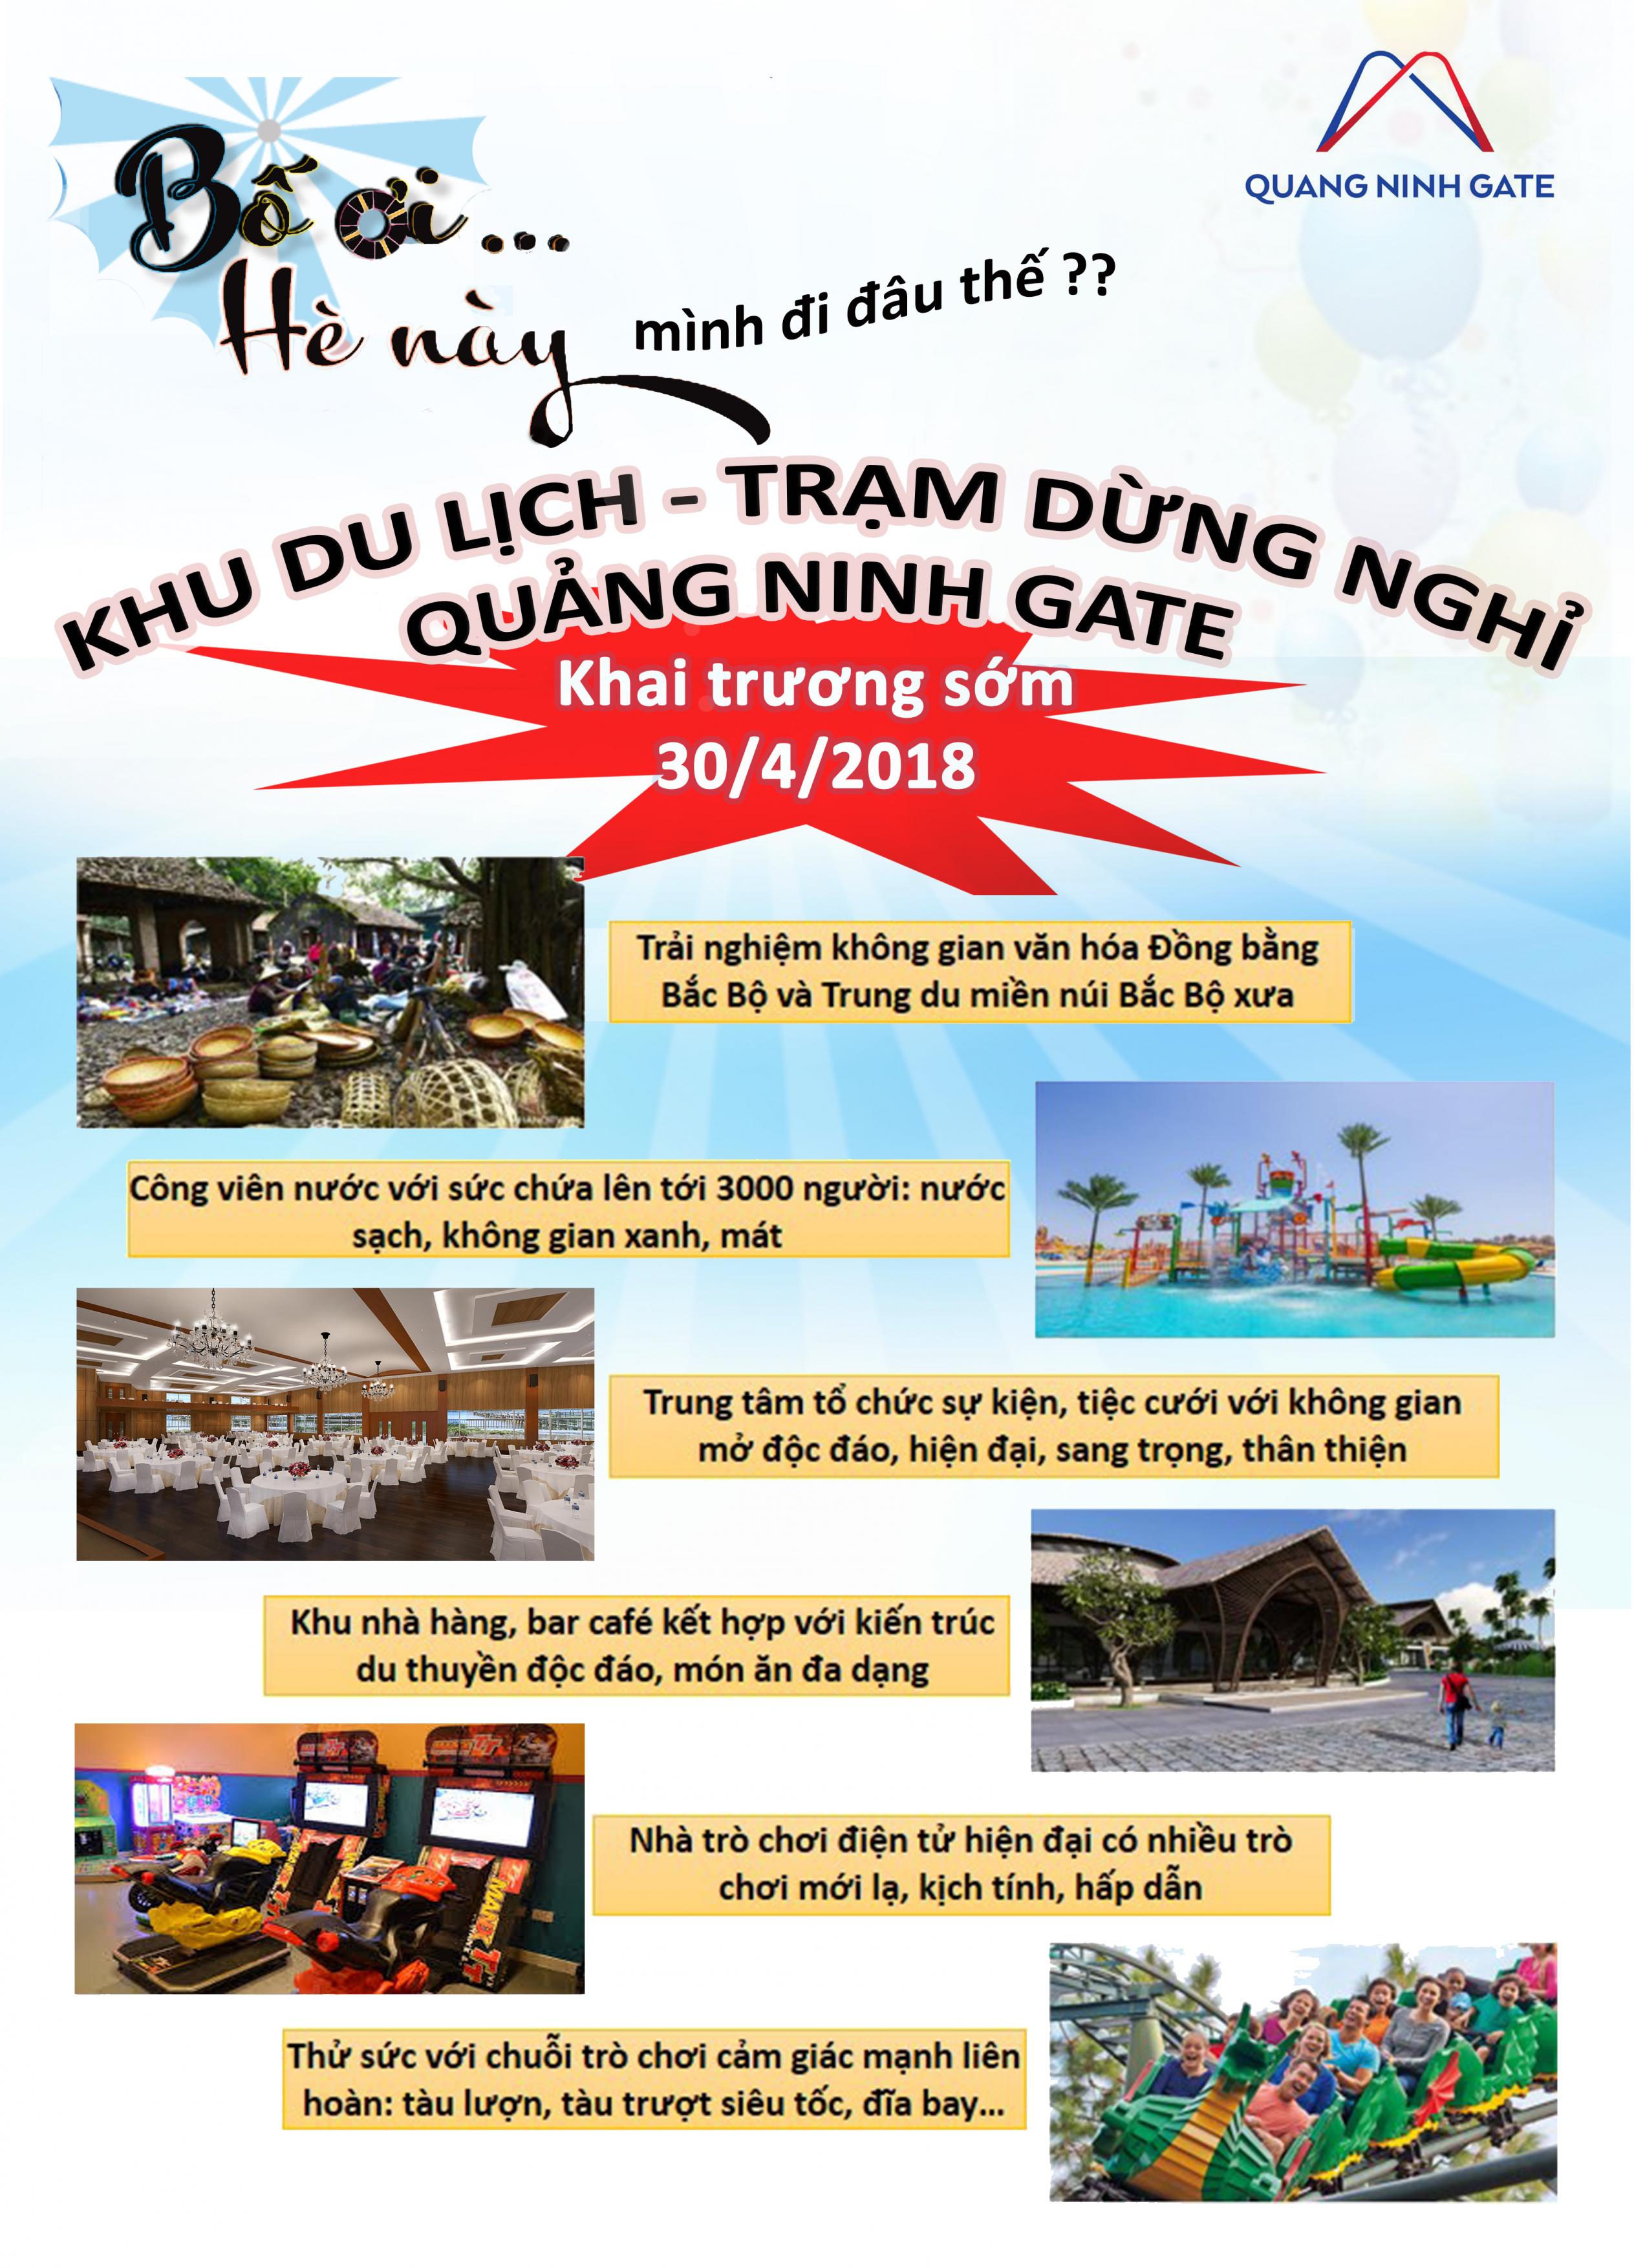 Khu du lịch - Trạm dừng nghỉ Quảng Ninh Gate